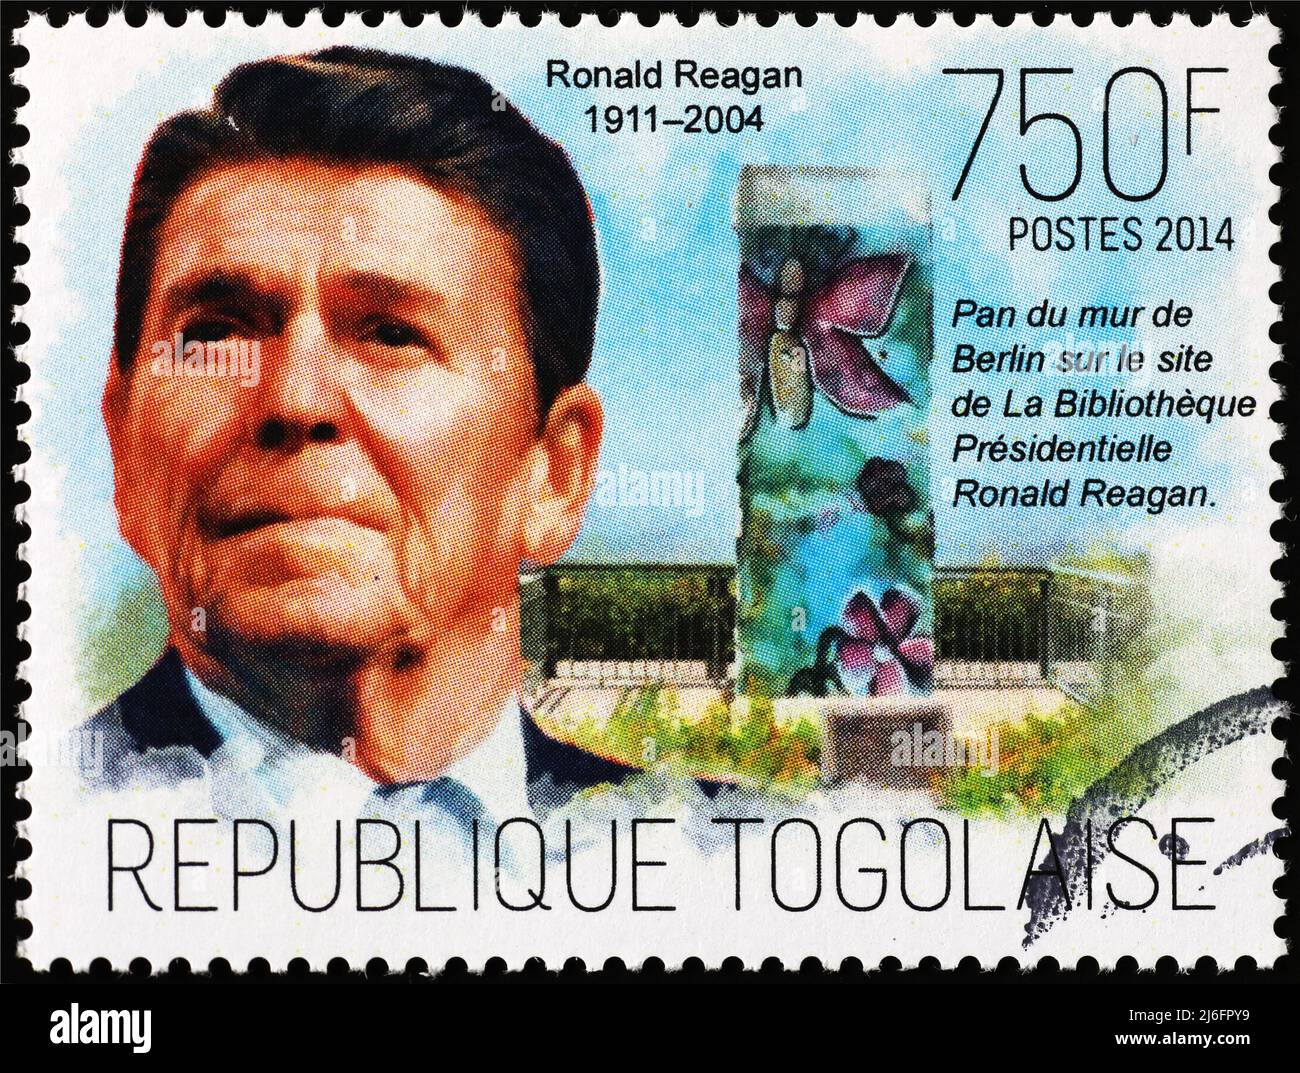 Ronald Reagan retrato sobre sello postal de Togo Foto de stock